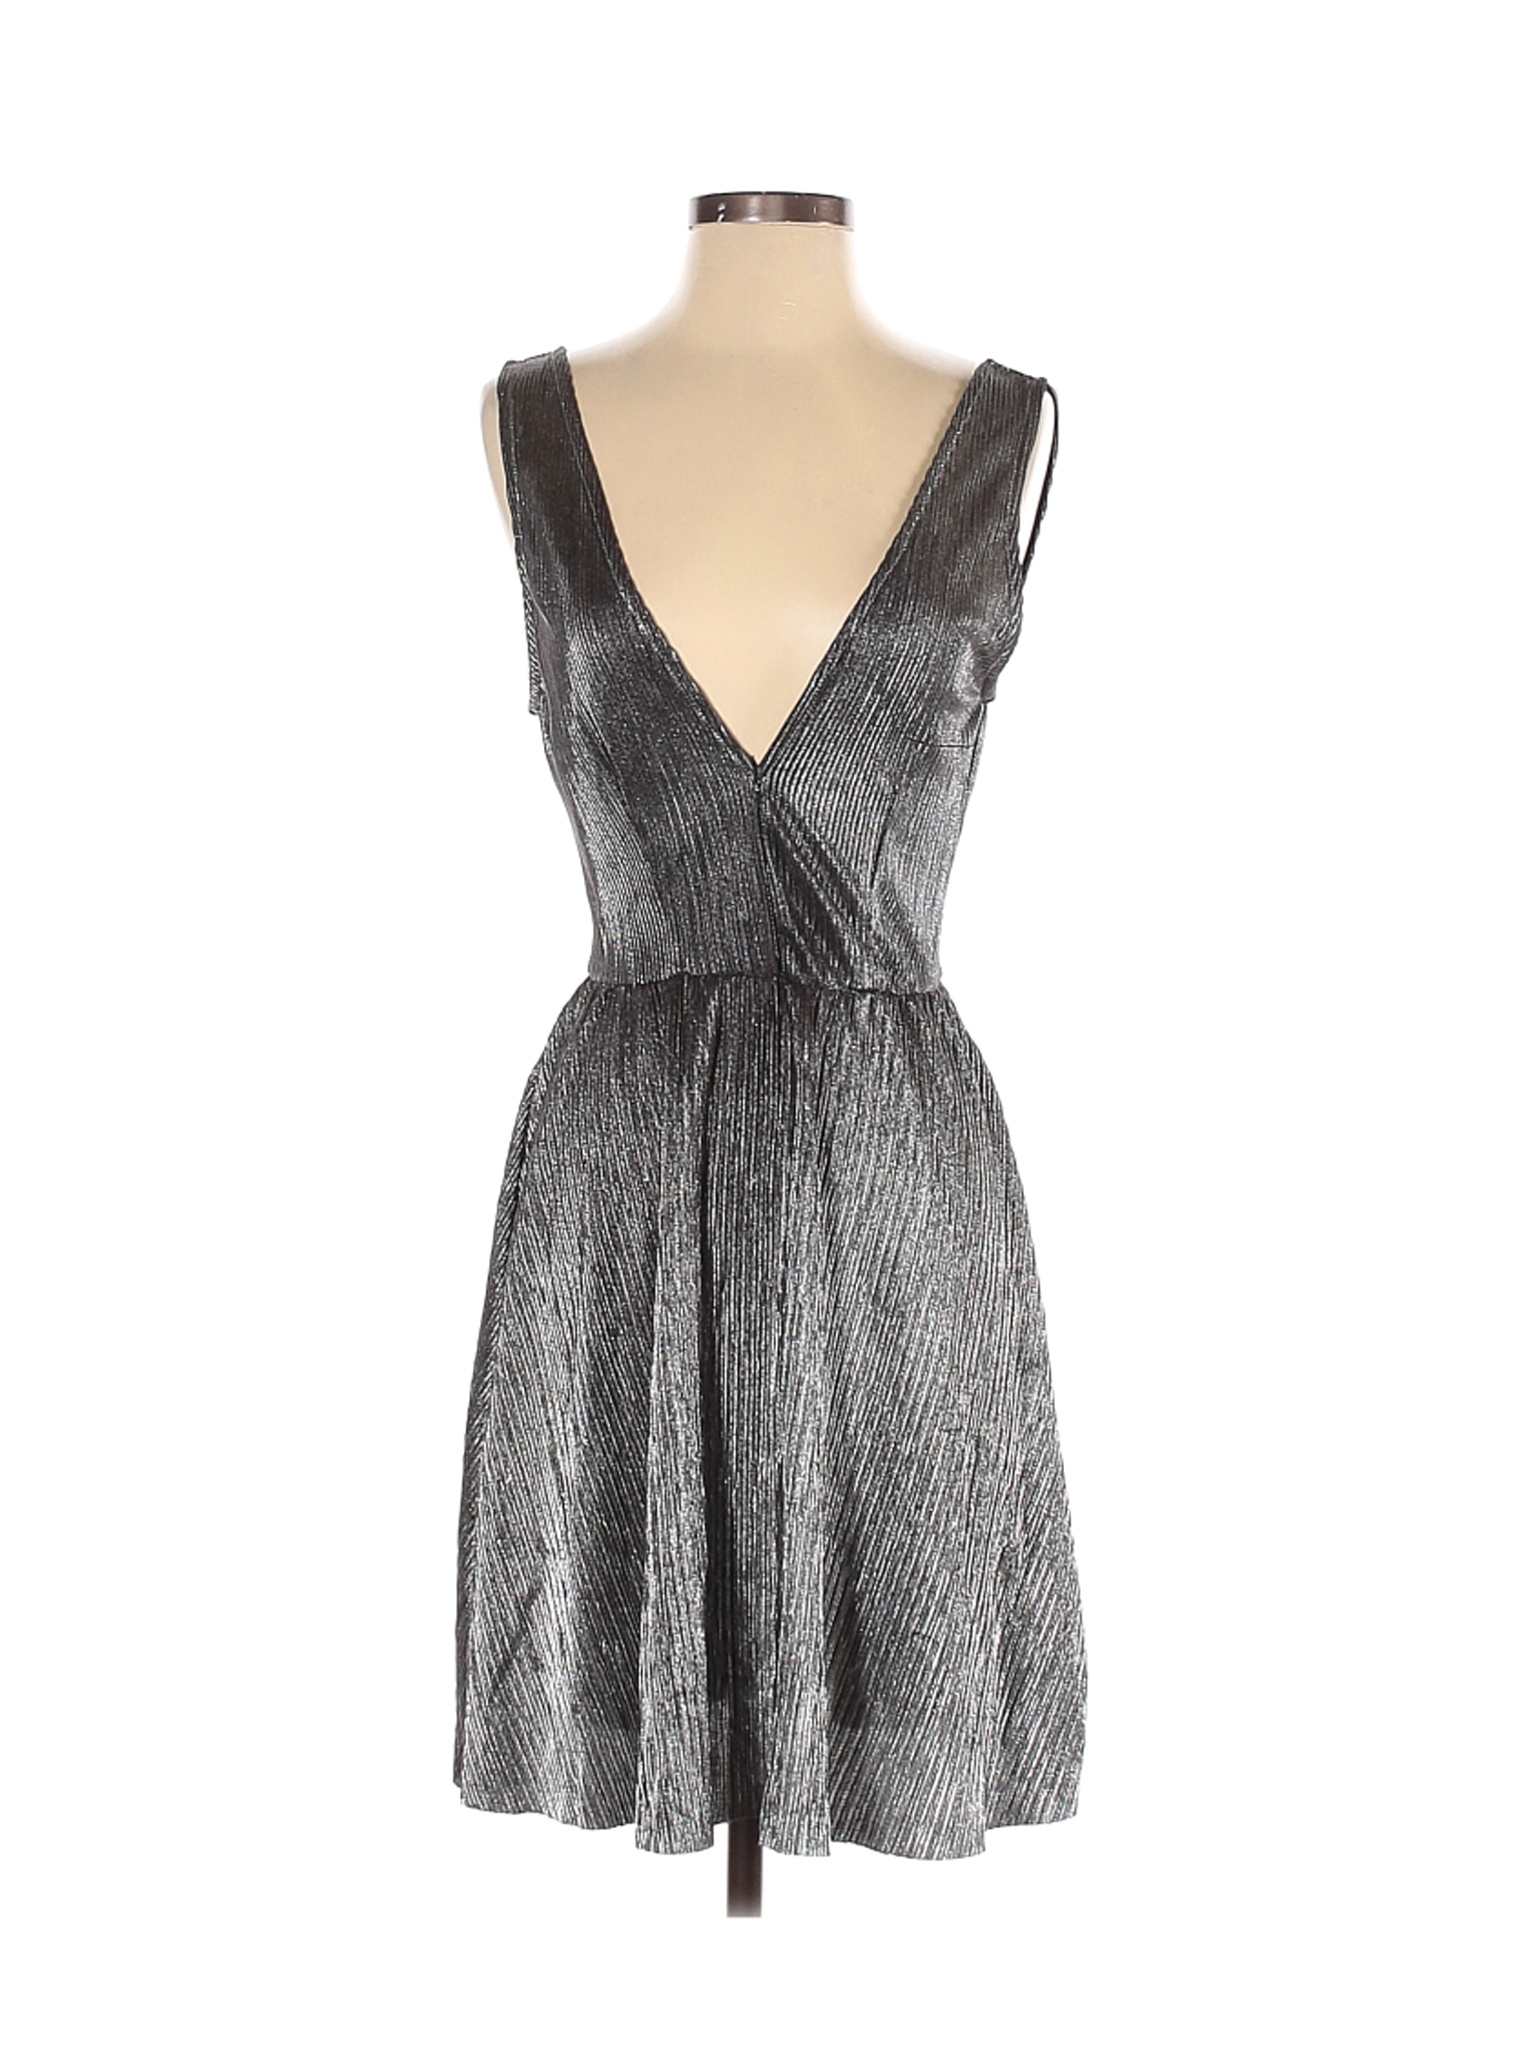 H&M Women Silver Casual Dress 8 | eBay